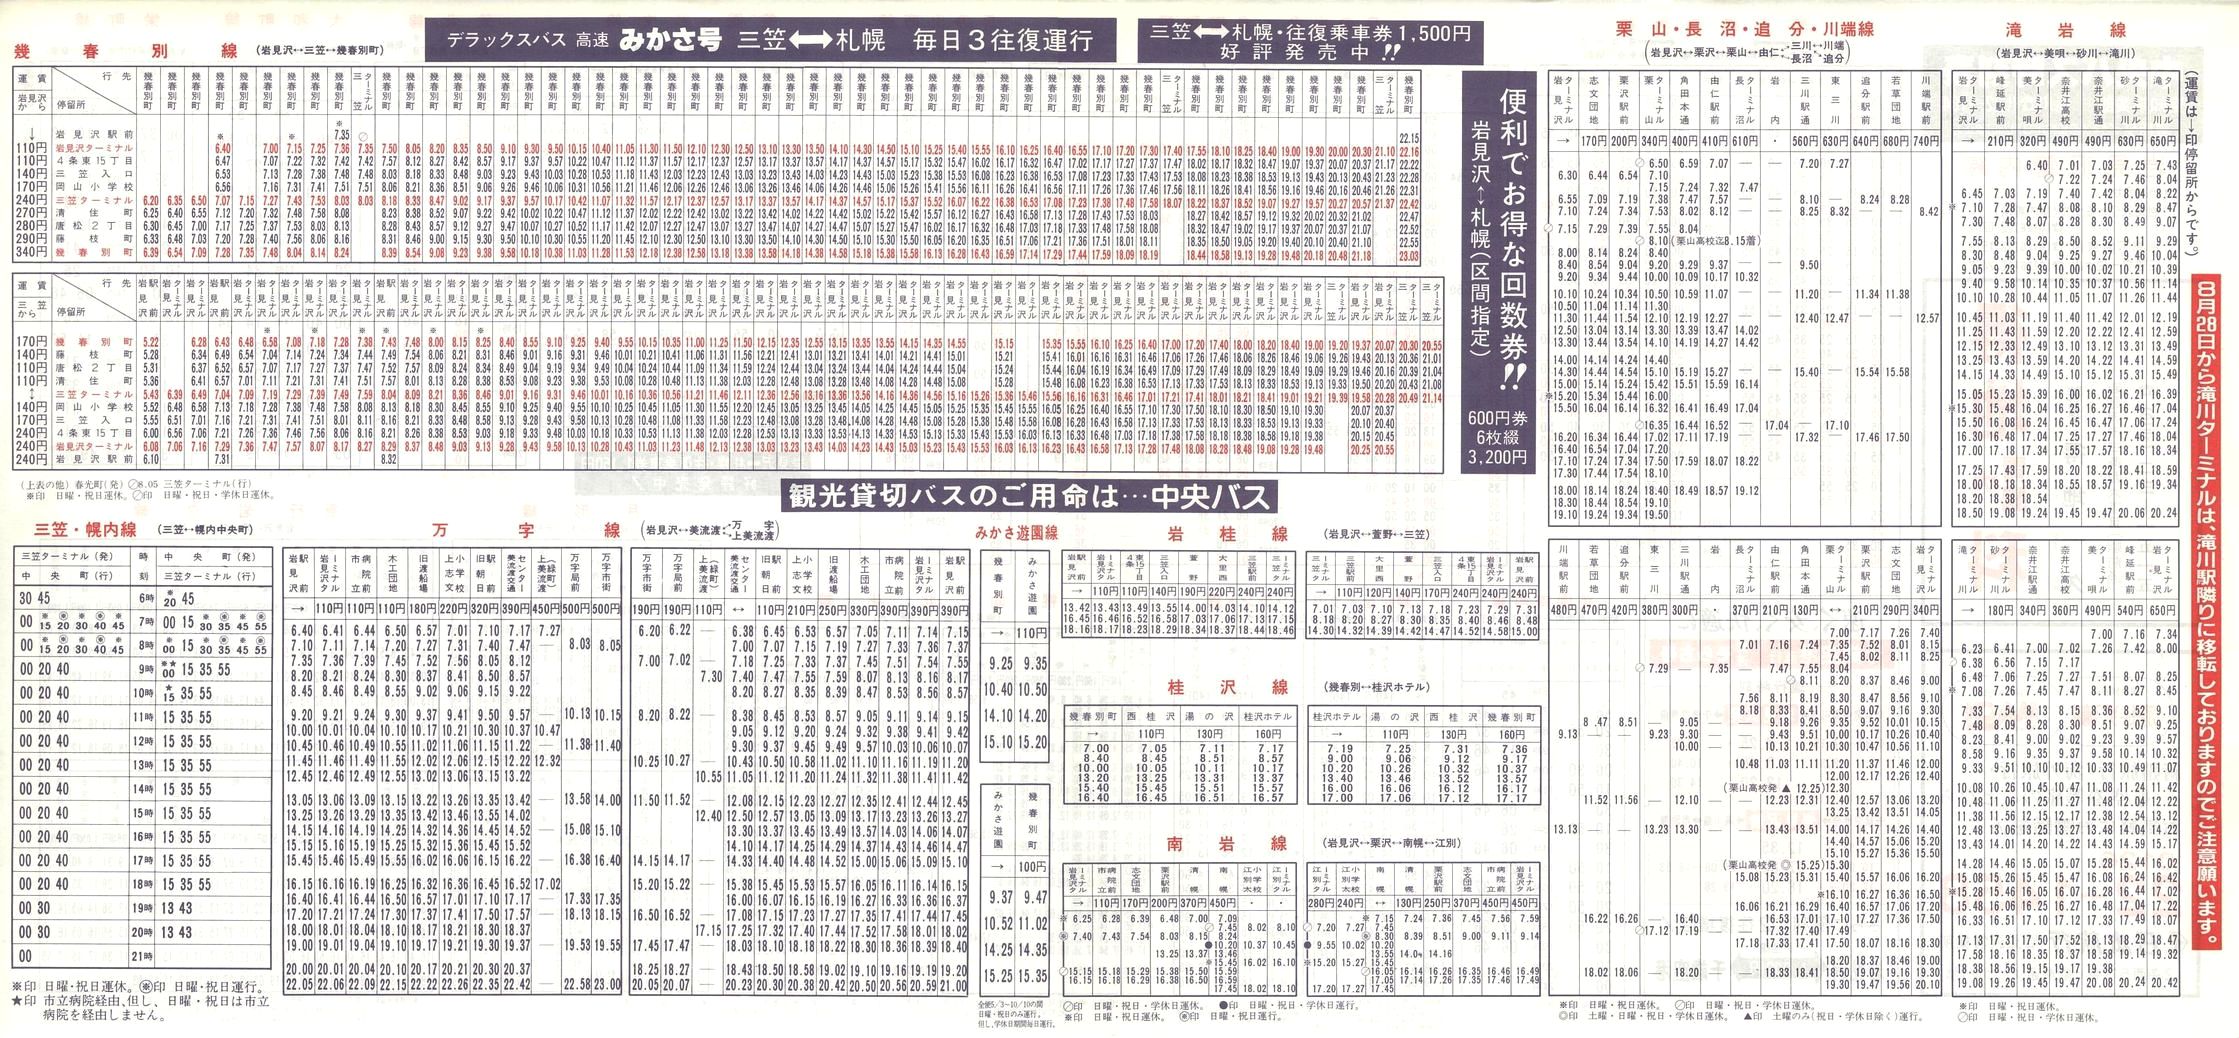 1988-08-28改正_北海道中央バス(空知)_岩見沢管内線時刻表裏面